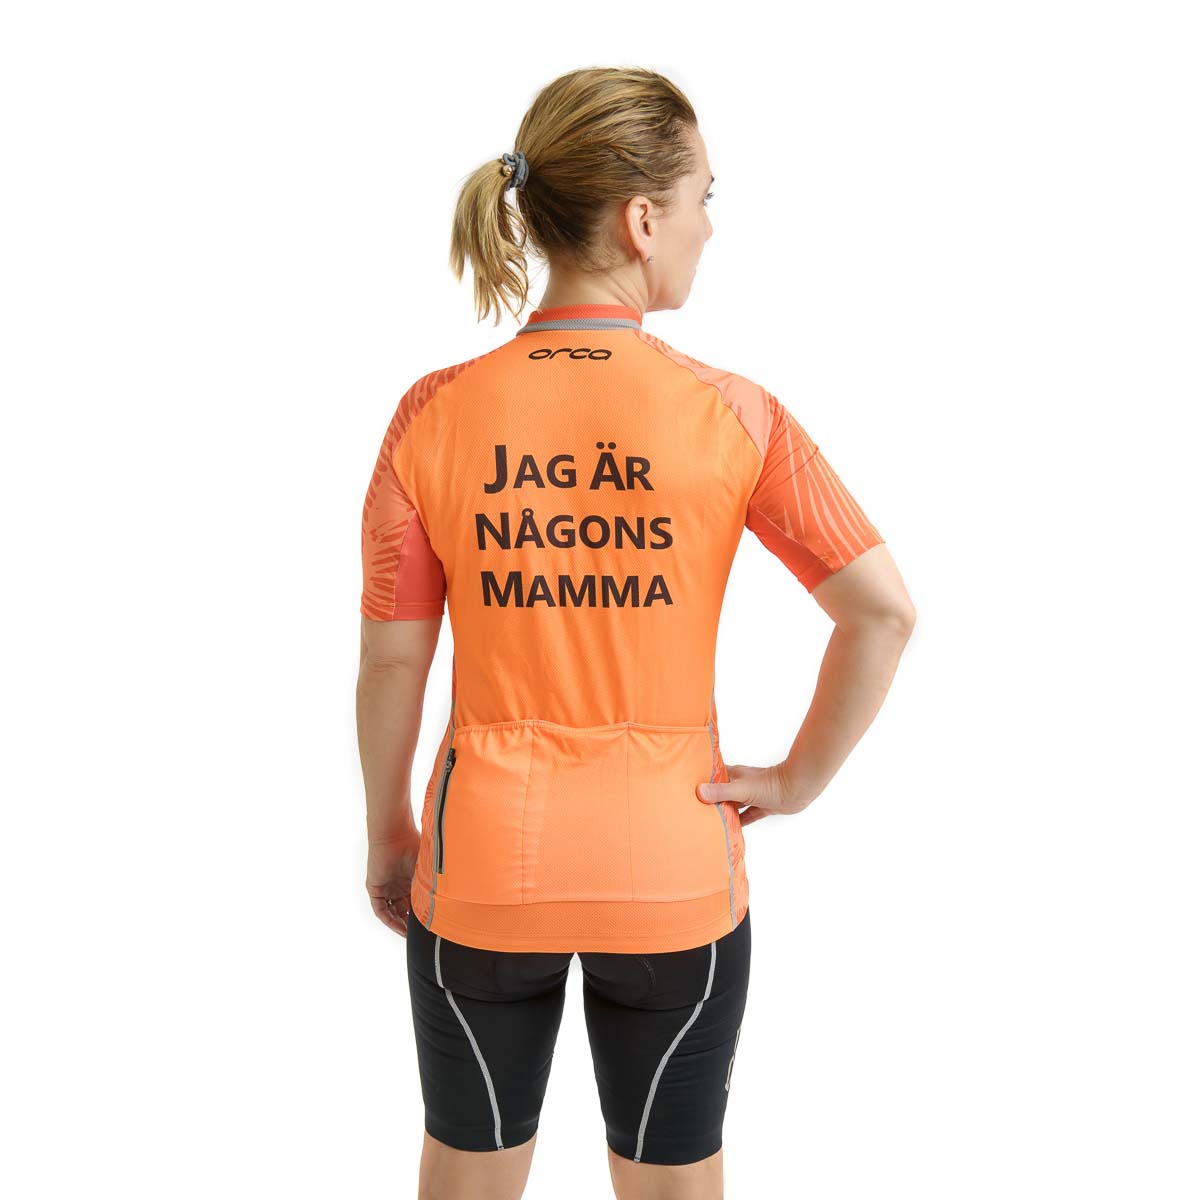 Orca Women's Jersey - "Jag är någons Mamma"